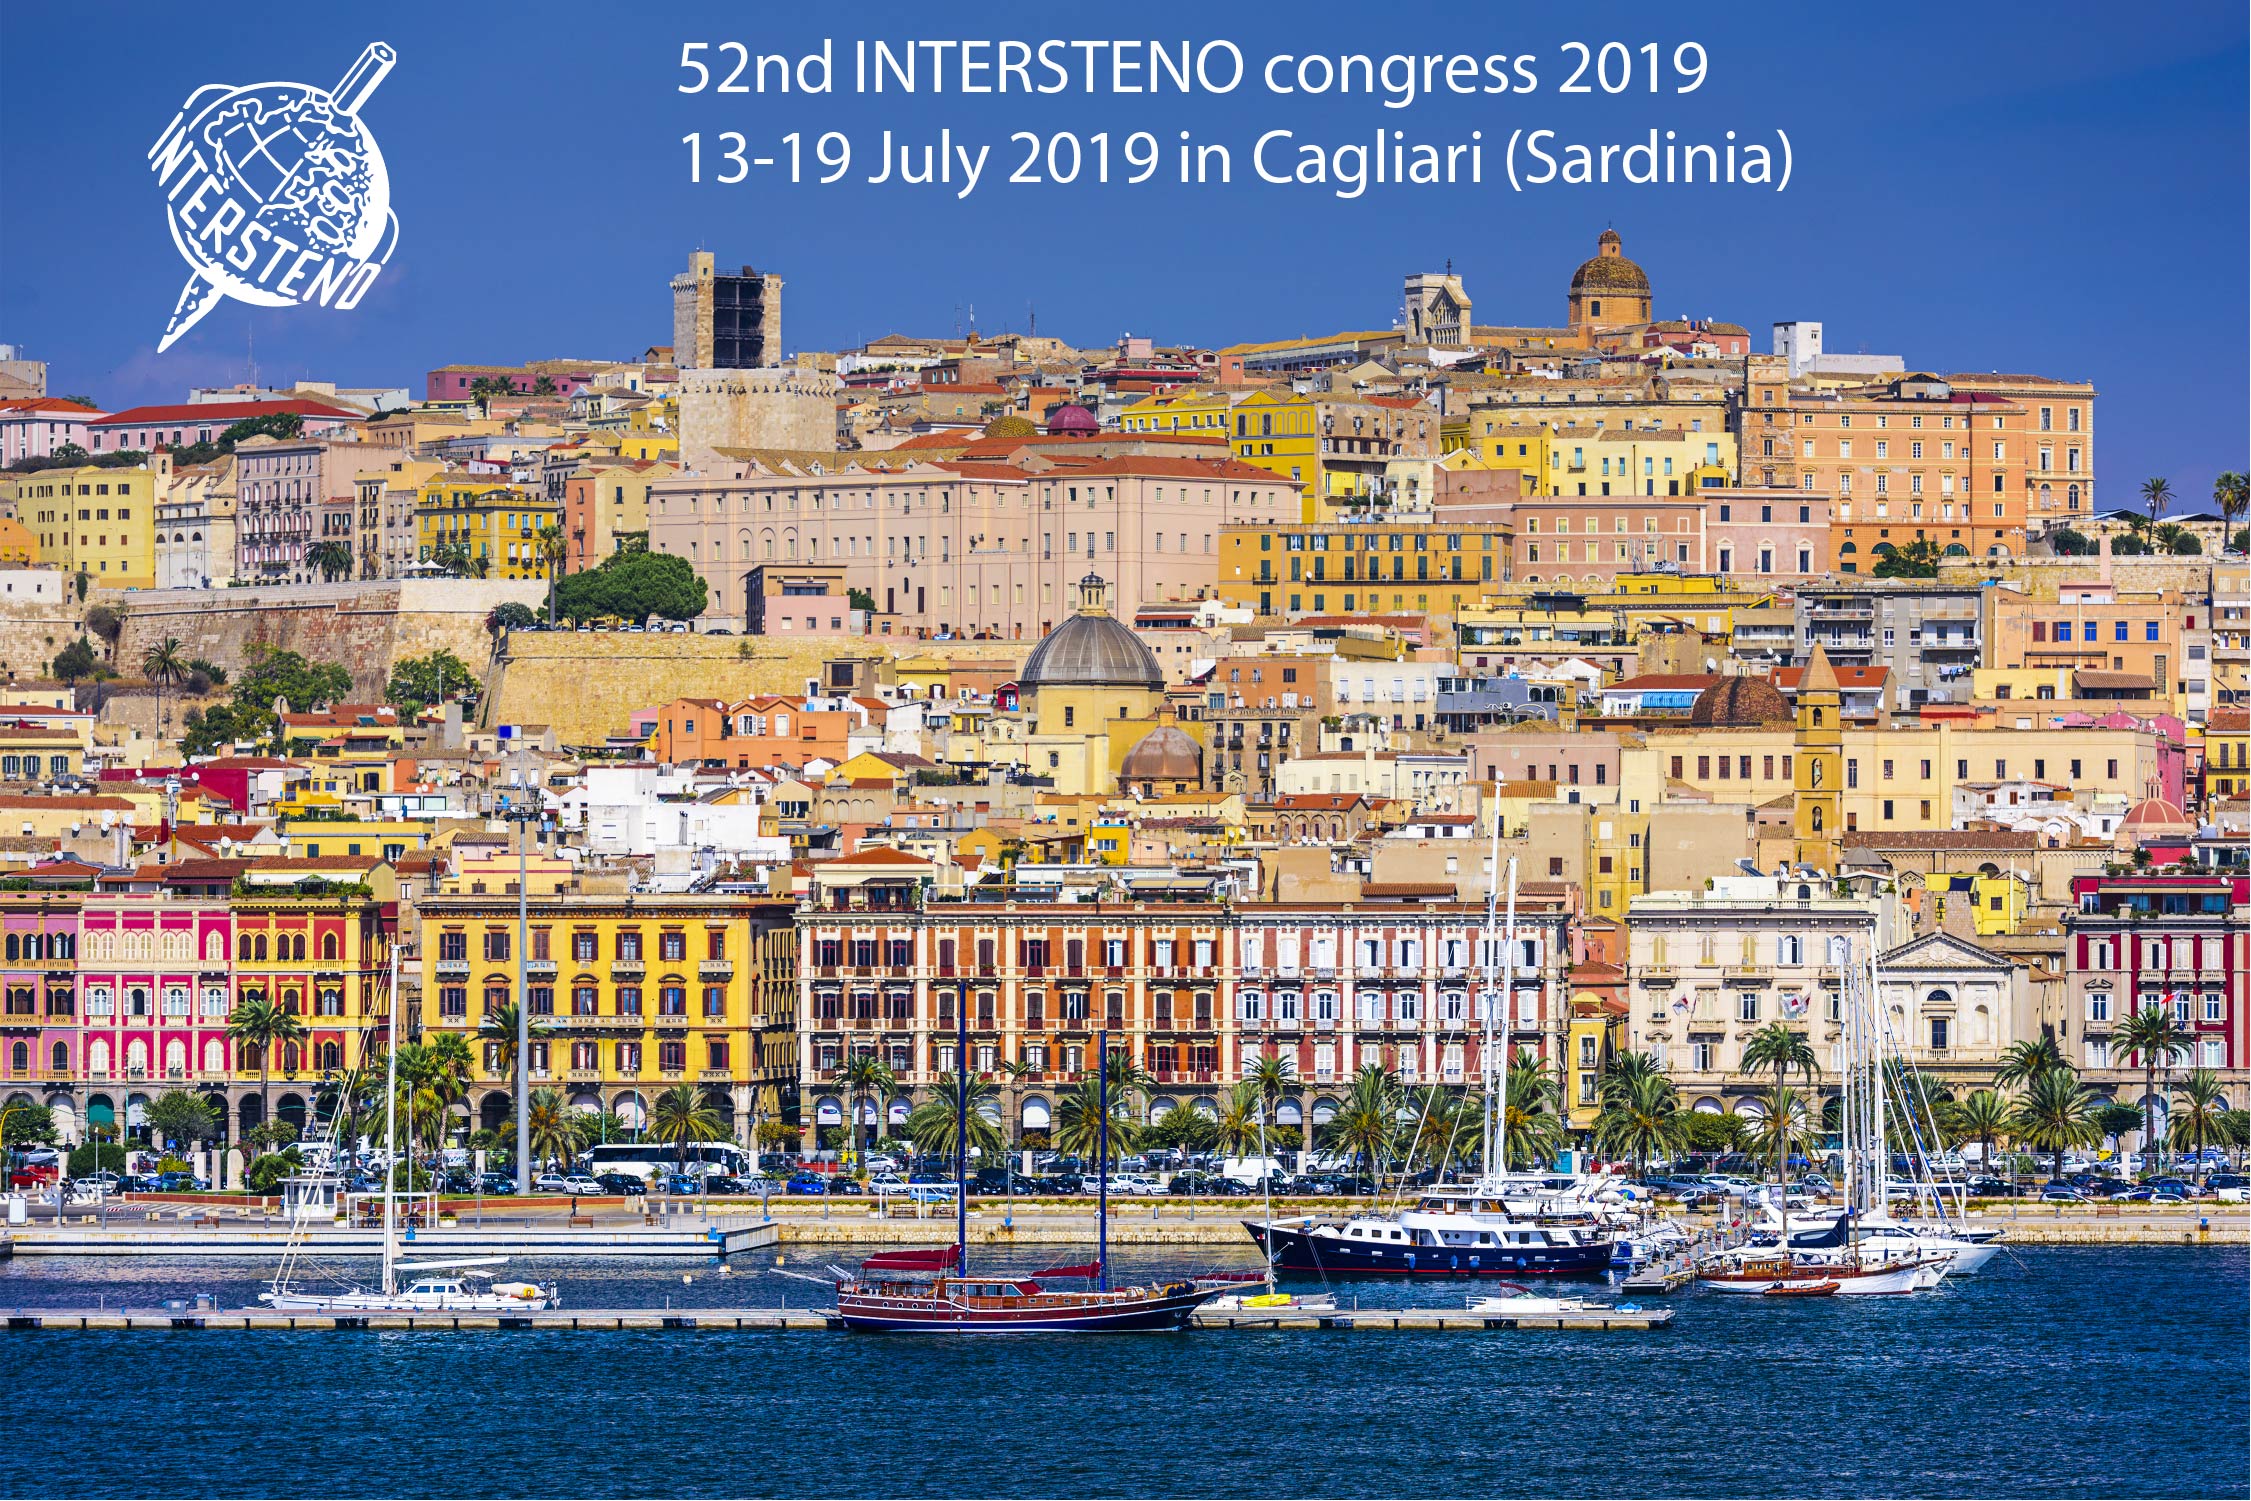 52nd Intersteno Congress Cagliari 2019 Official Press Conference